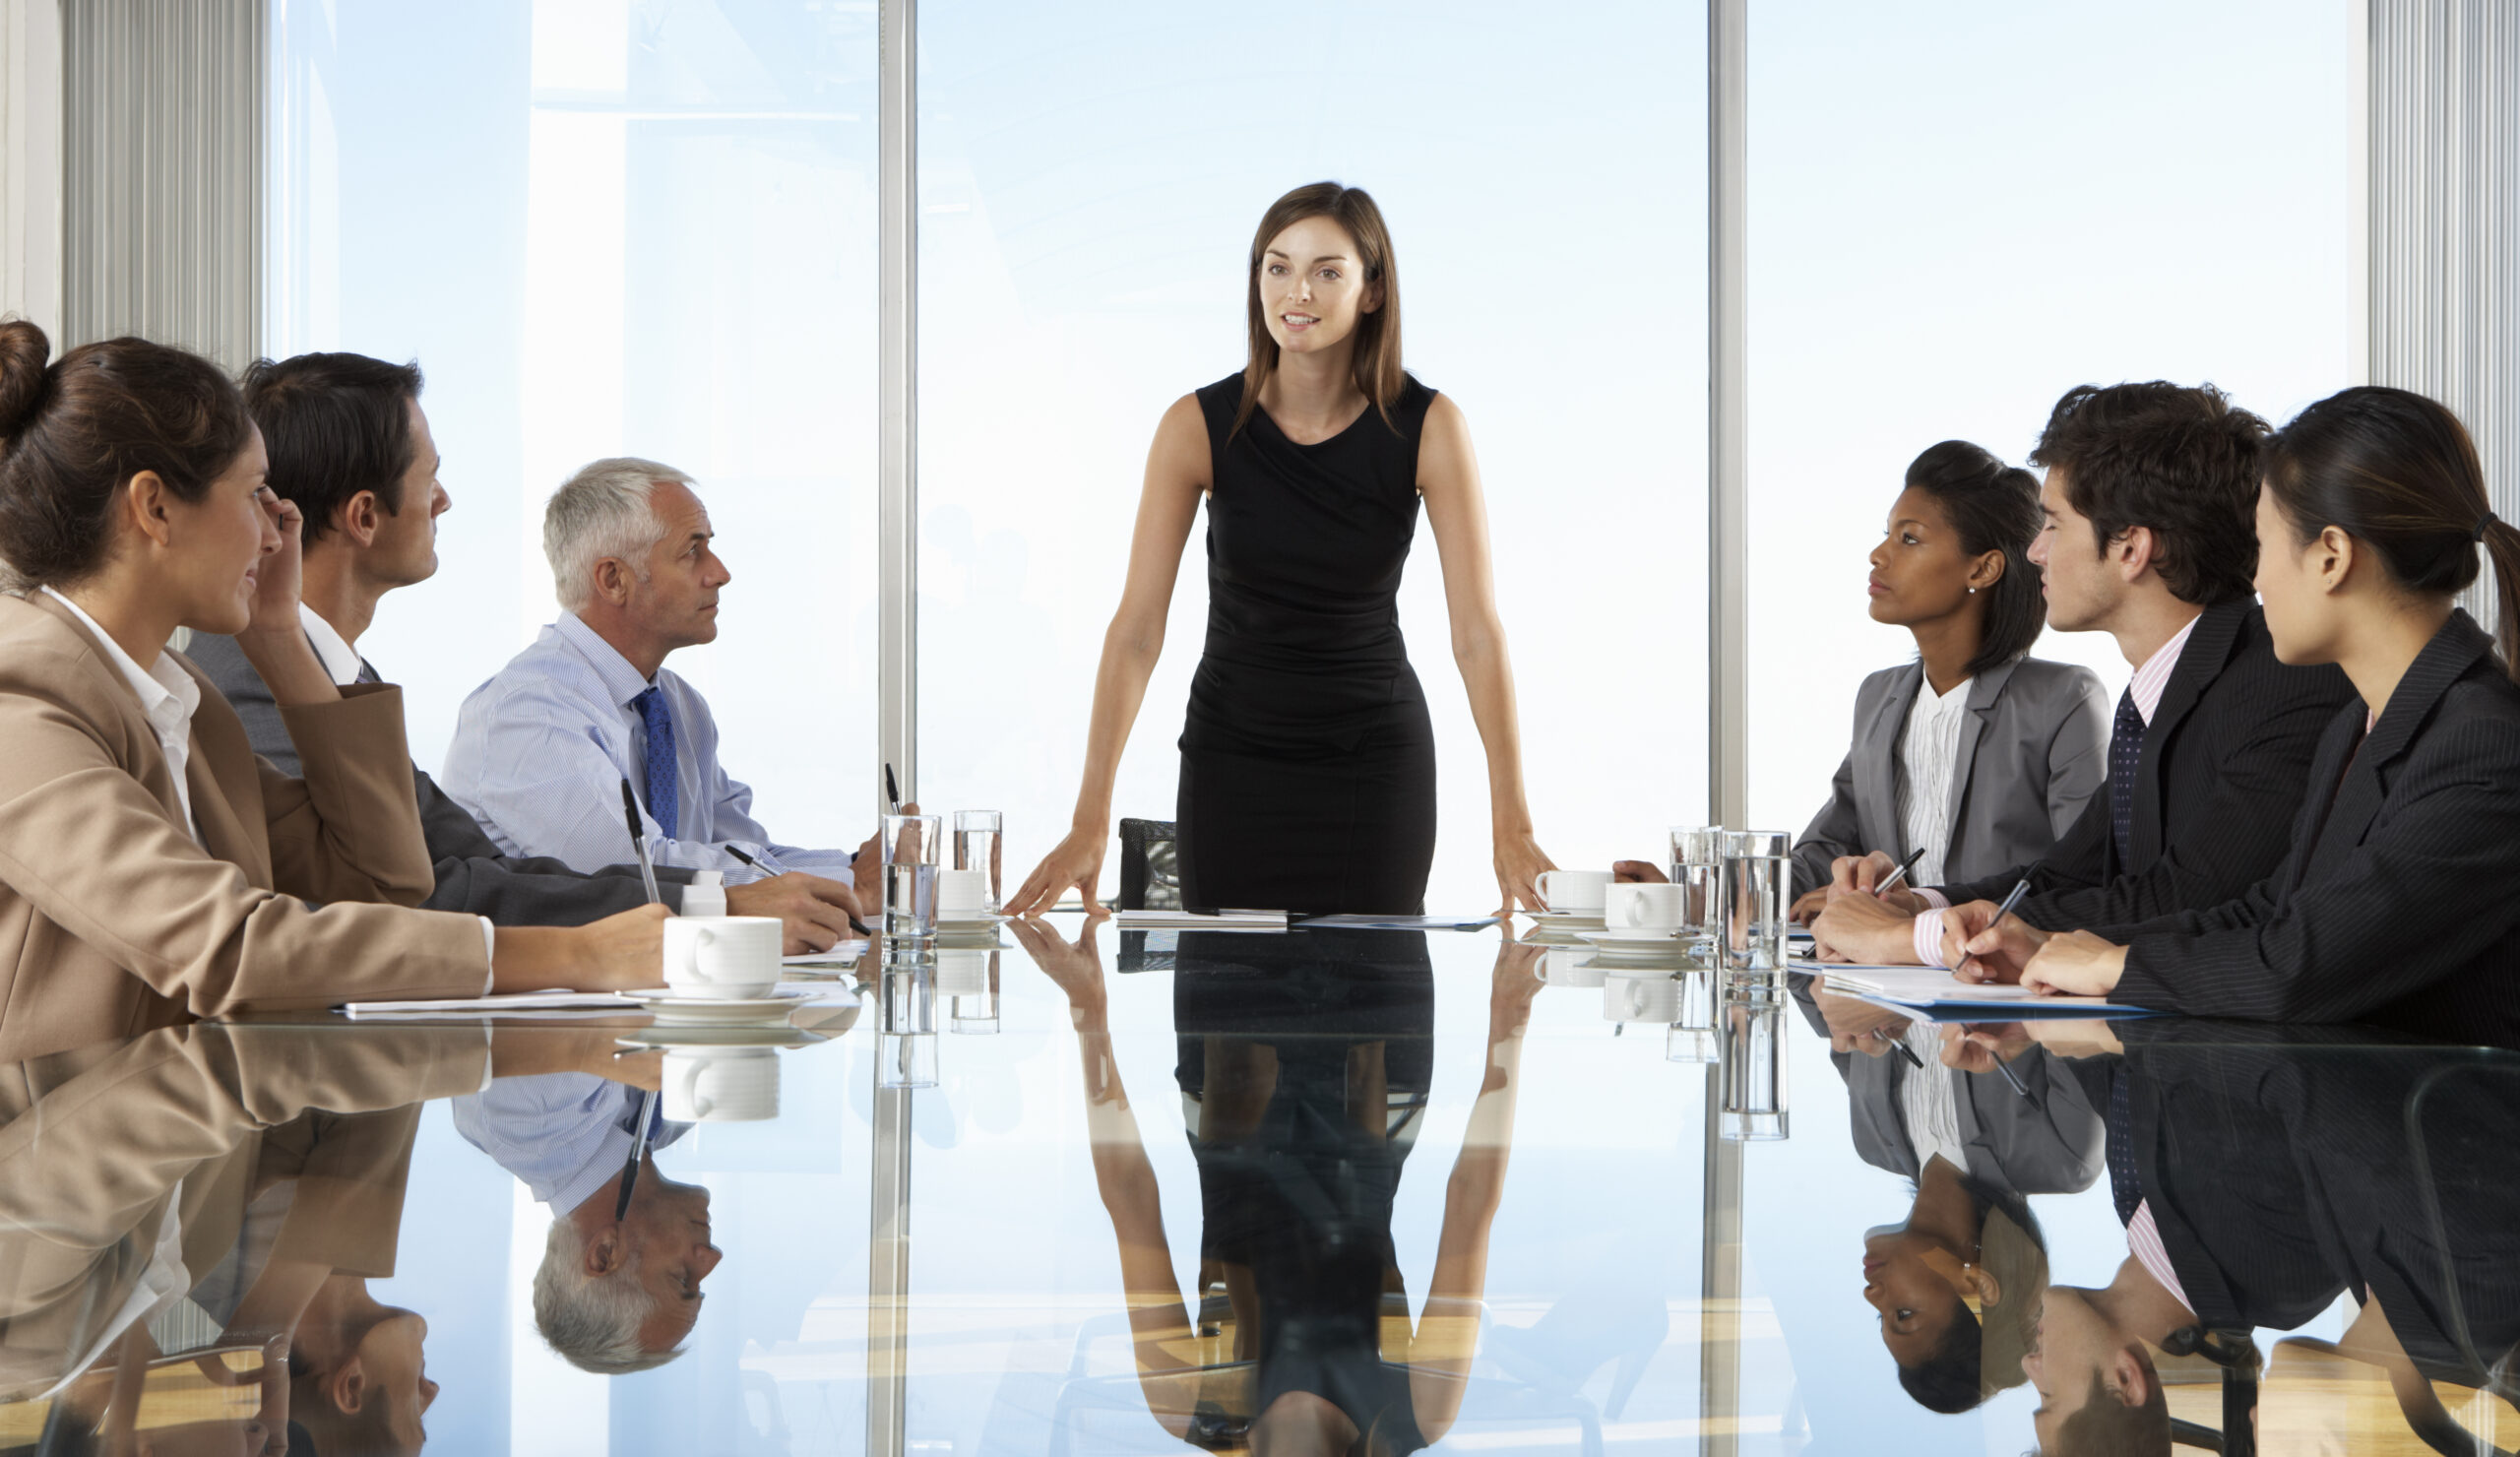 La photo montre une femme debout en tant que cadre lors d'une réunion avec des collaborateurs.